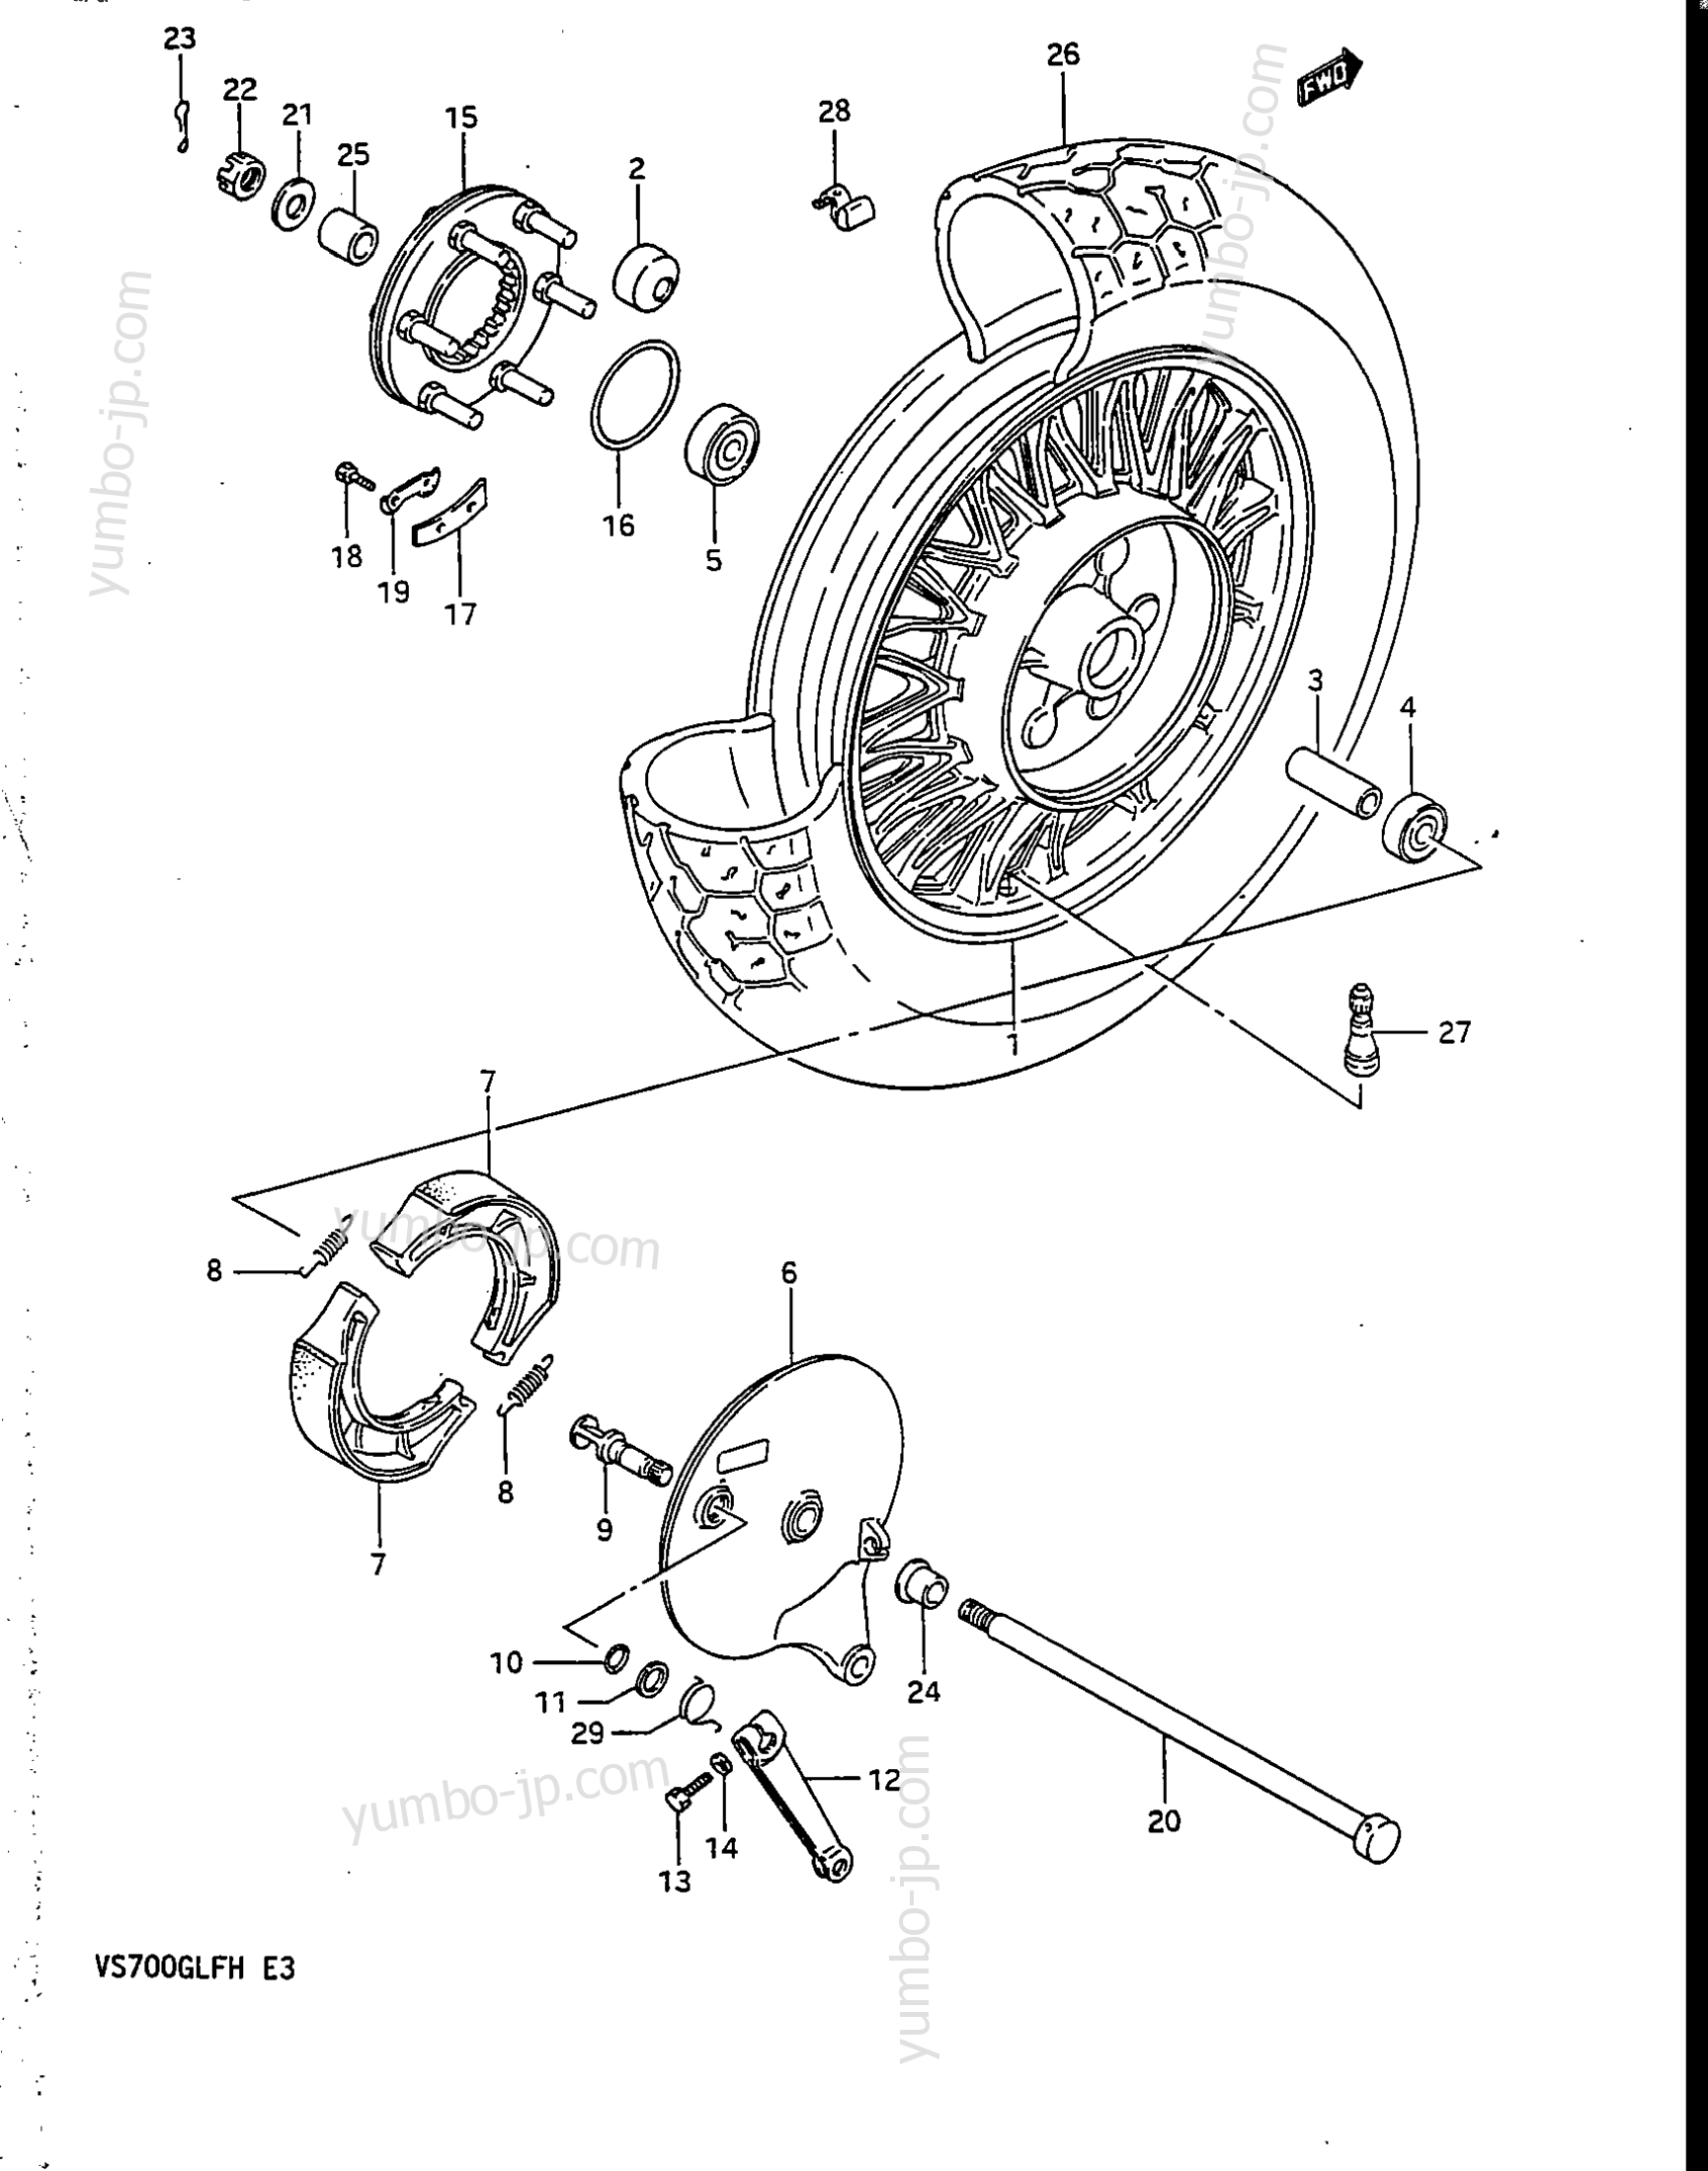 REAR WHEEL (VS700GLEFG/GLEPG) for motorcycles SUZUKI Intruder (VS700GLEF) 1986 year